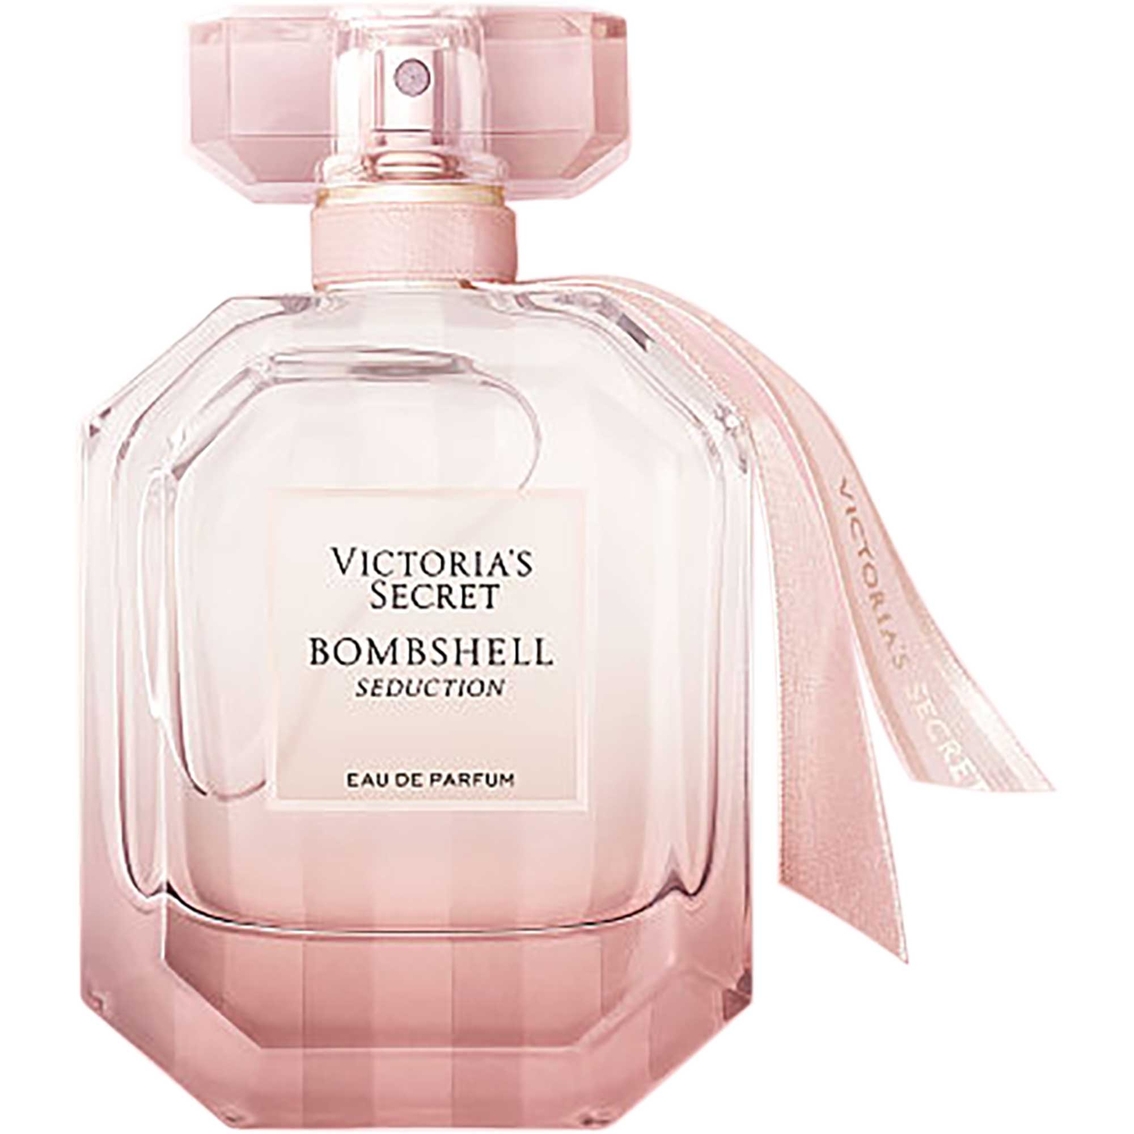 Victorias Secret Bombshell Seduction Eau De Parfum Spray Fragrances Beauty And Health Shop